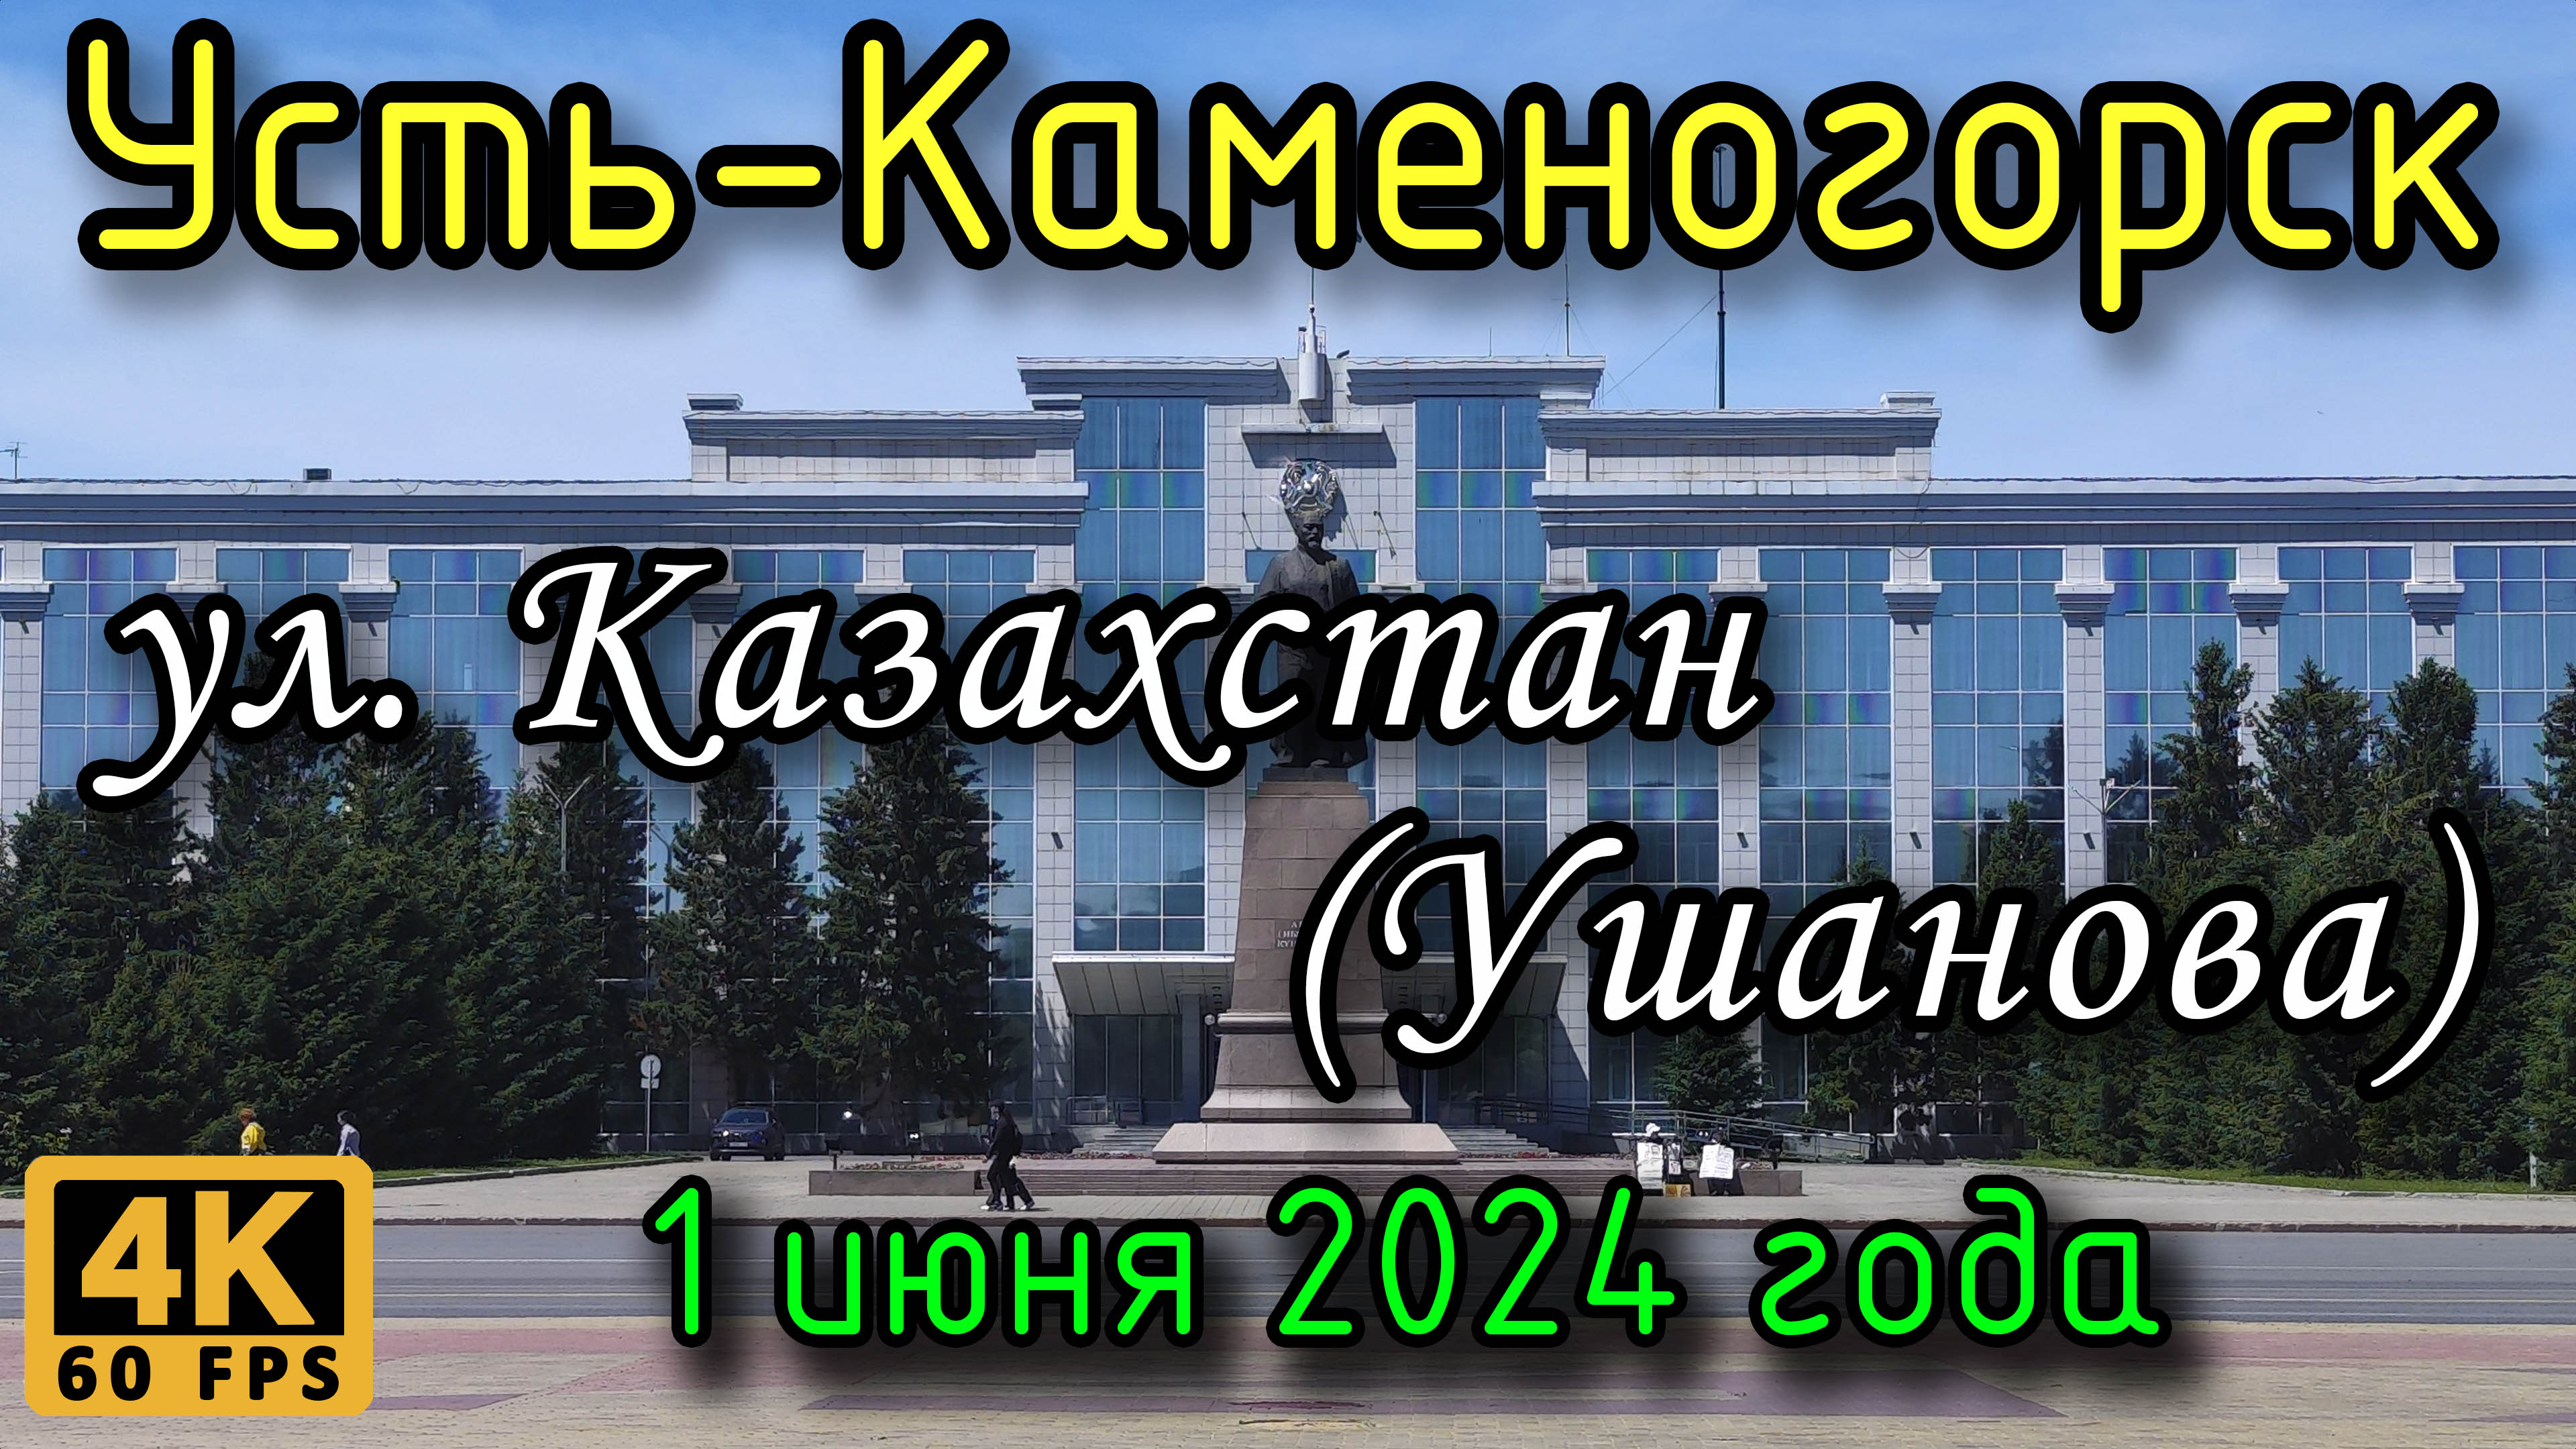 Усть-Каменогорск: ул. Казахстан (Ушанова) в 4К, 1 июня 2024 года.